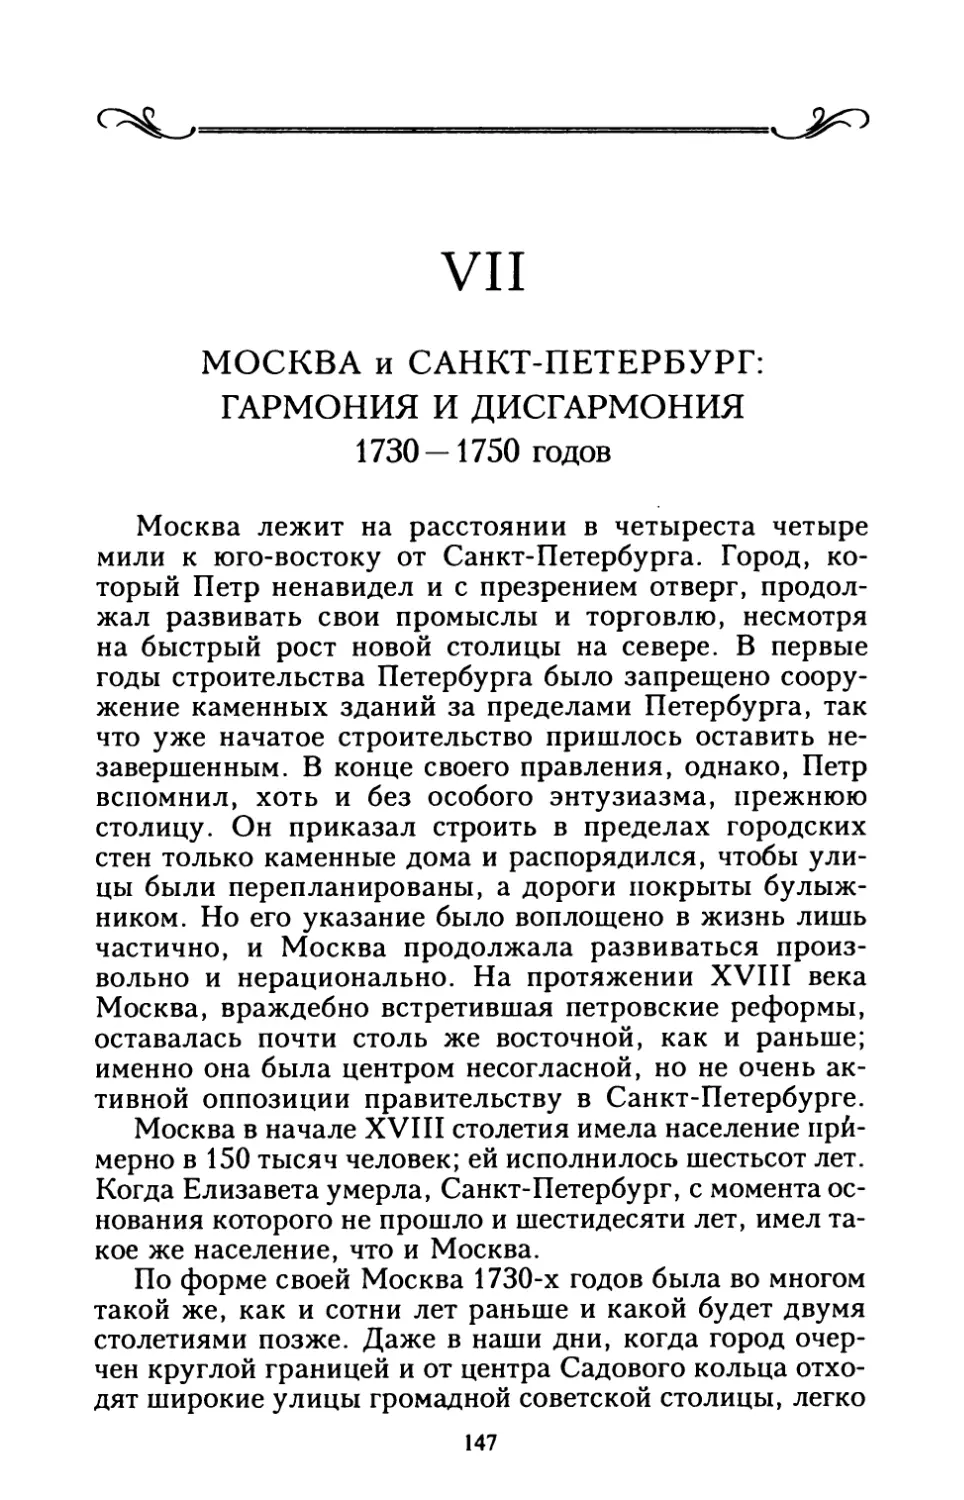 VII. МОСКВА и САНКТ-ПЕТЕРБУРГ: ГАРМОНИЯ И ДИСГАРМОНИЯ 1730 — 1750 годов